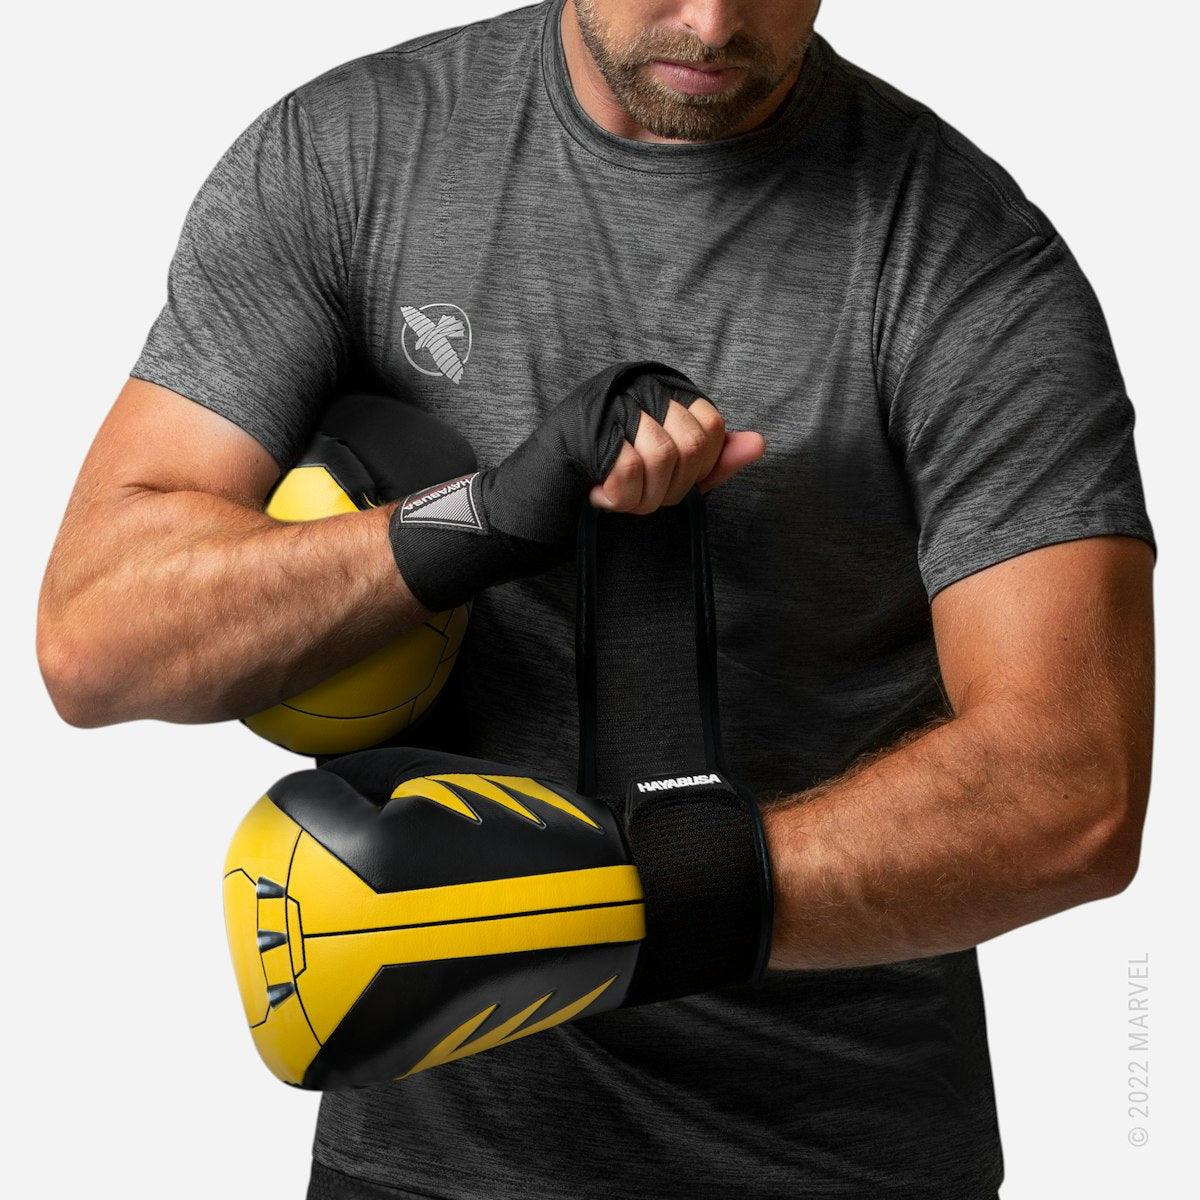 Marvels Wolverine Boxing Gloves - Violent Art Shop